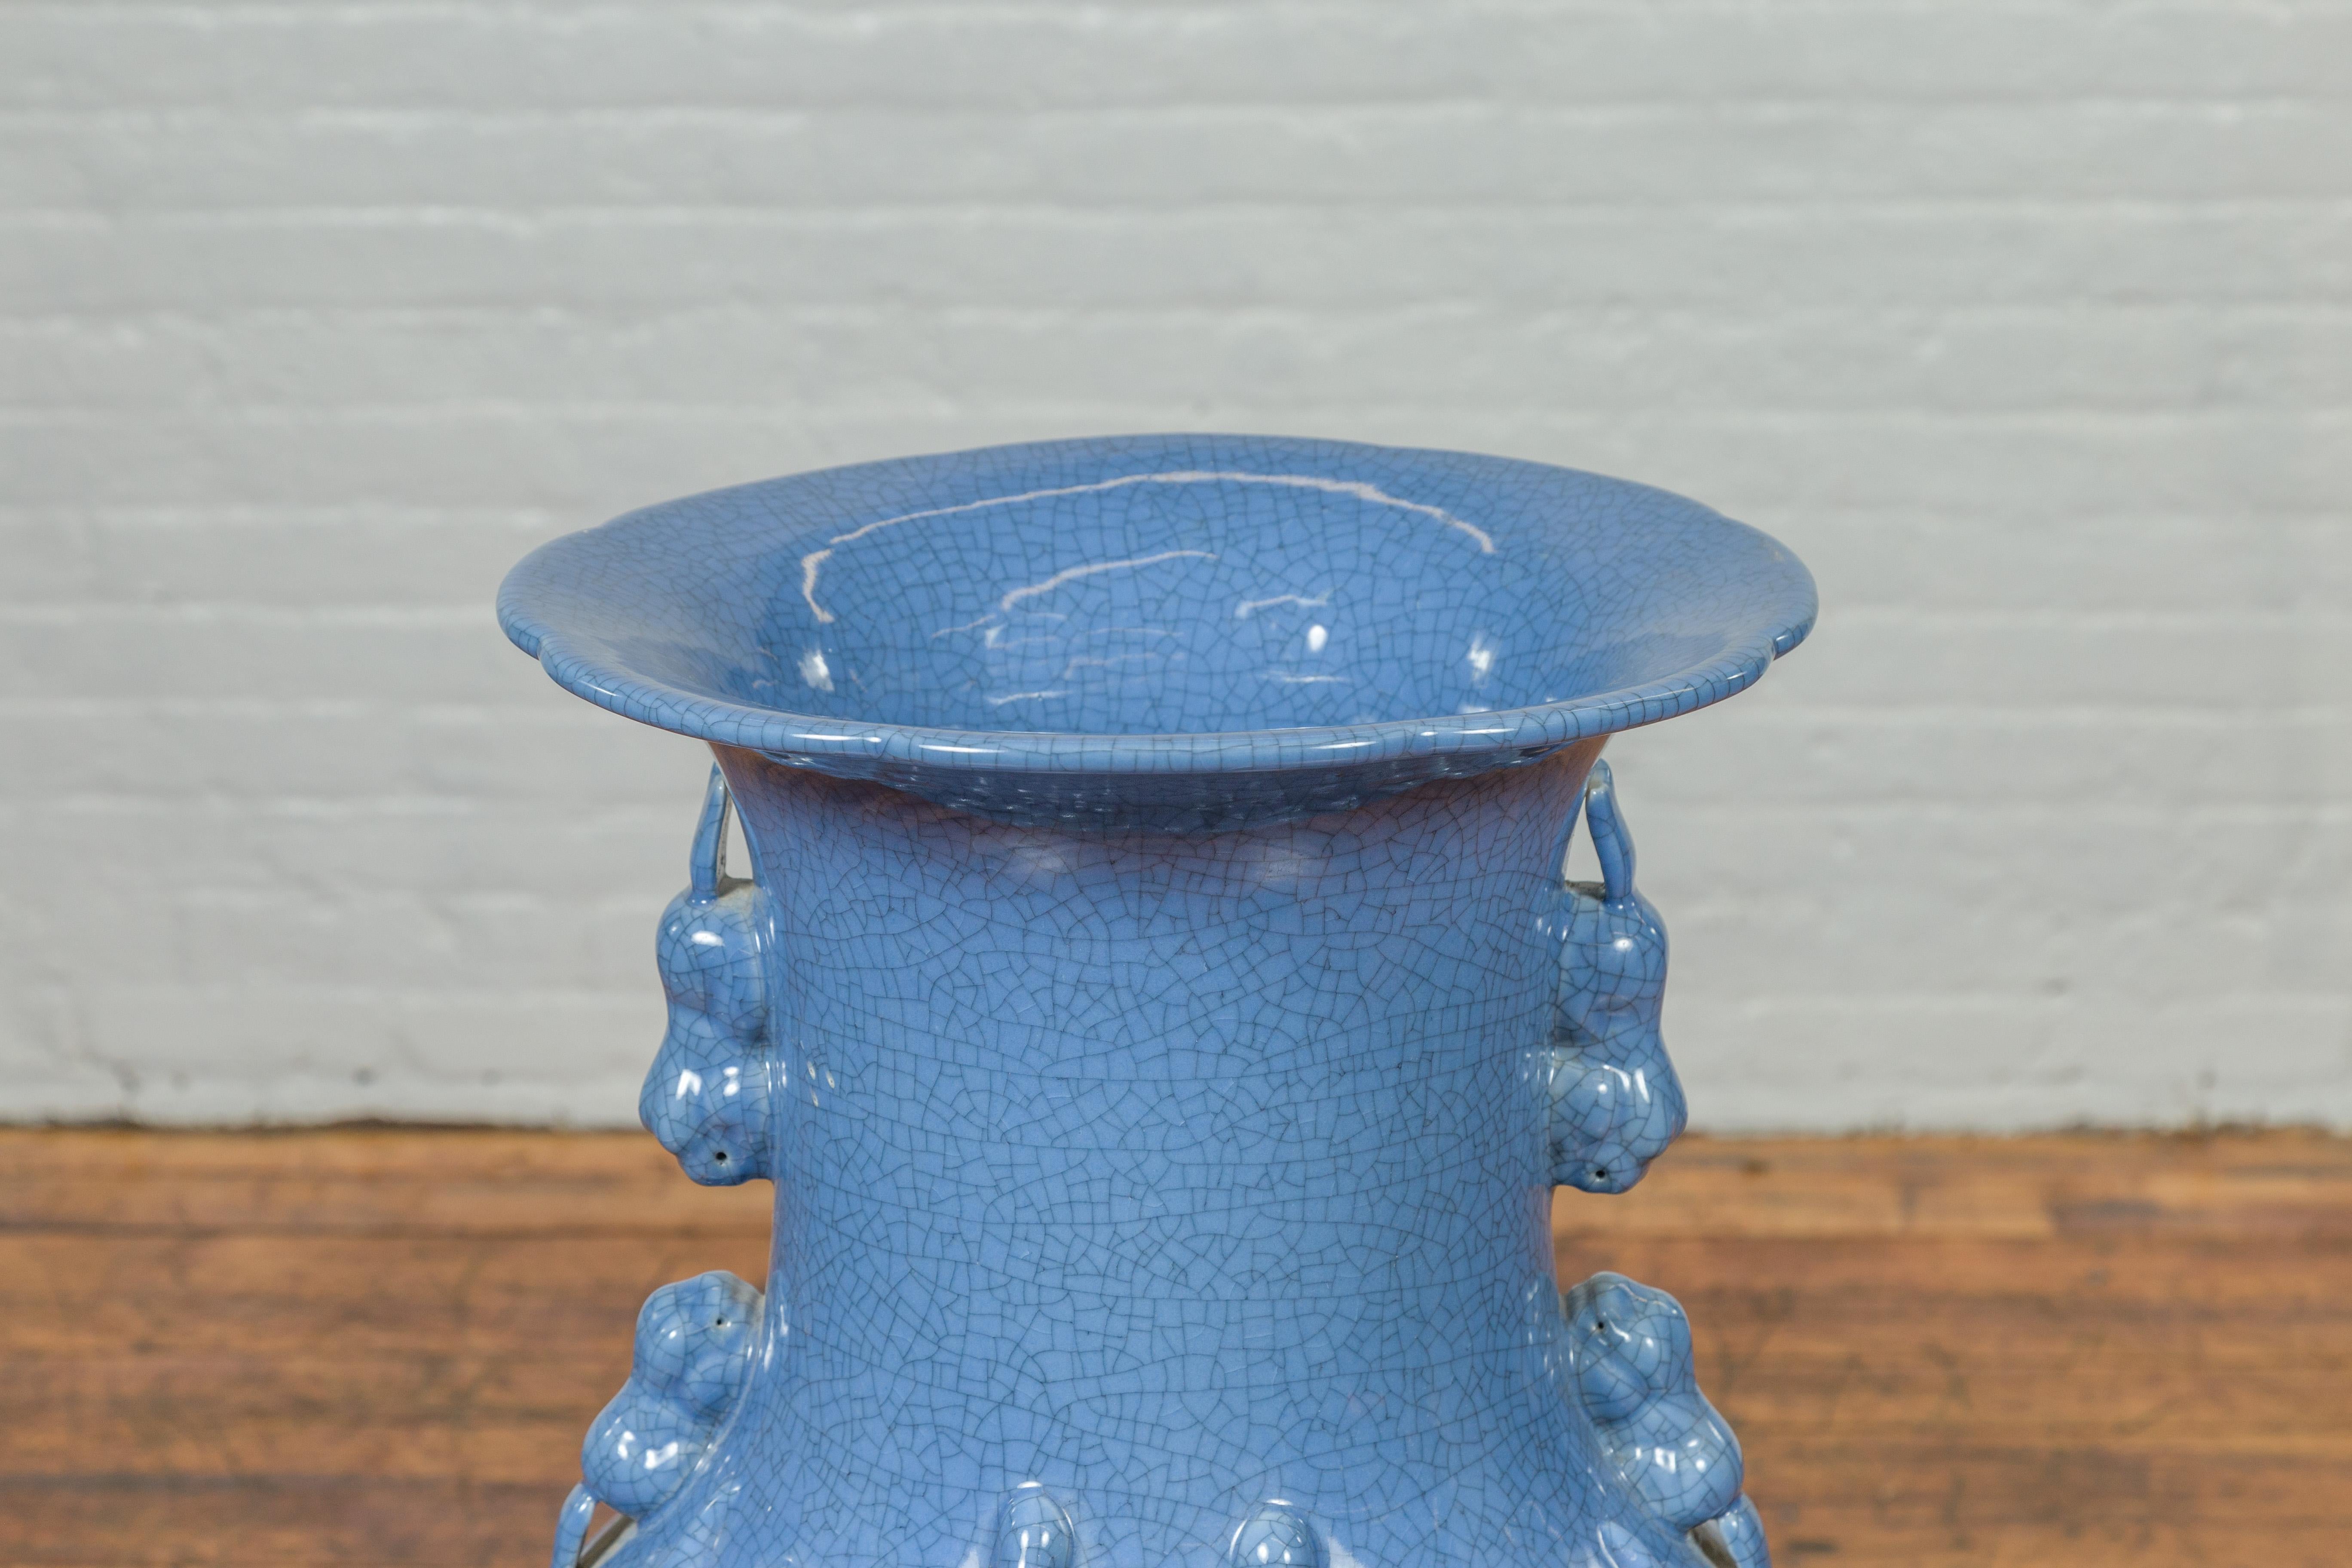 Glazed Ceremonial Altar Vase with Crackled Blue Glaze and Decorative Motifs For Sale